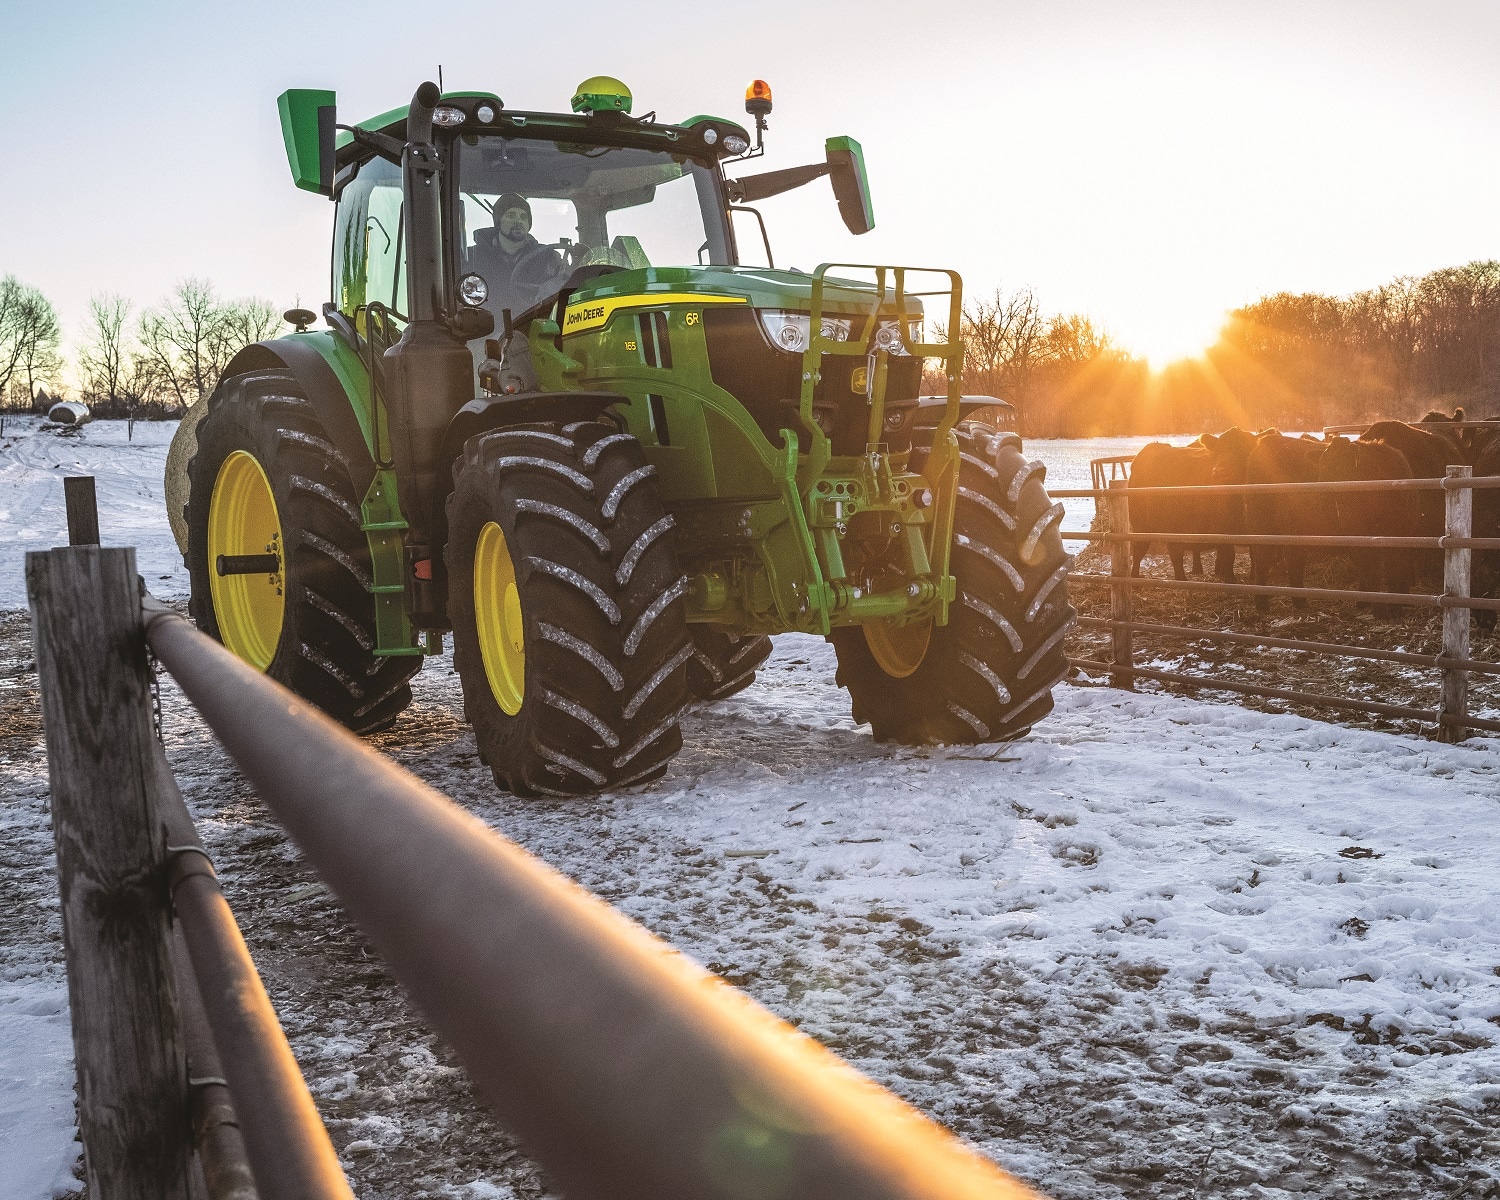  A 6R tractor on a snowy farm lot